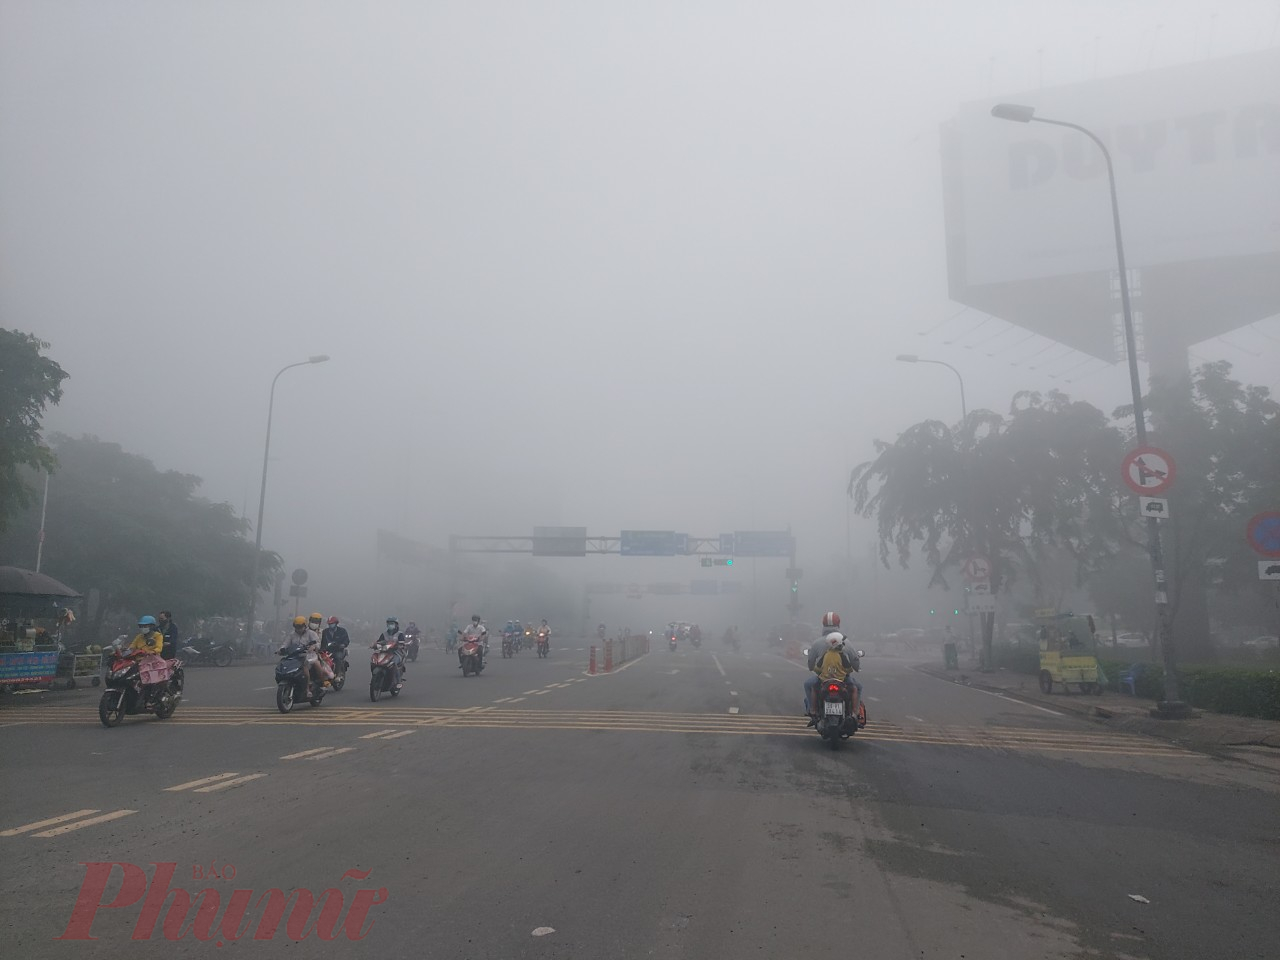 Lớp sương mù dày đặc trên đường Võ Văn Kiệt thời điểm 7 giờ sáng ngày 22/7.